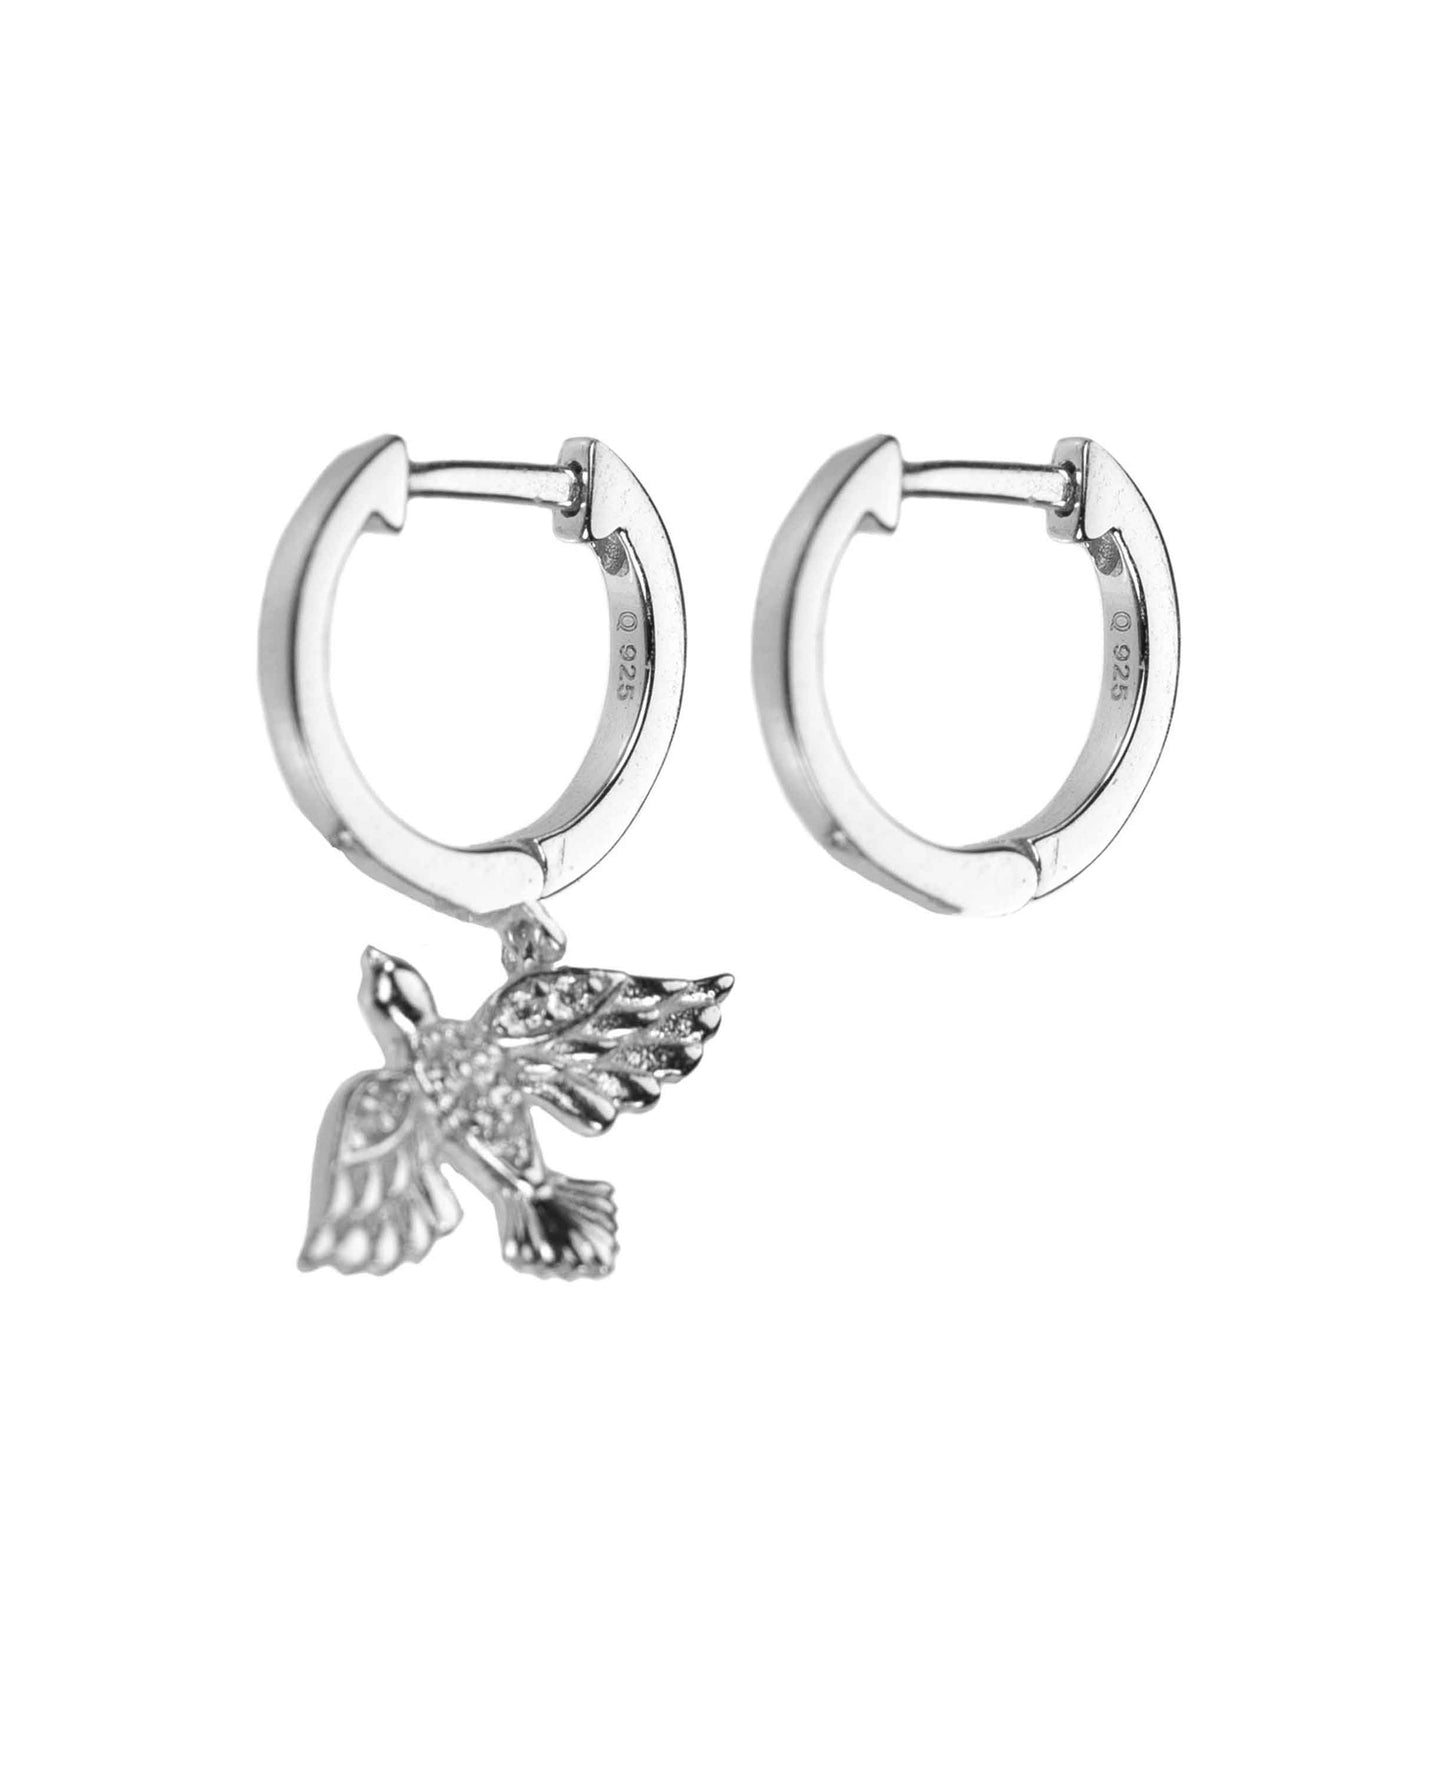 Birdie earrings